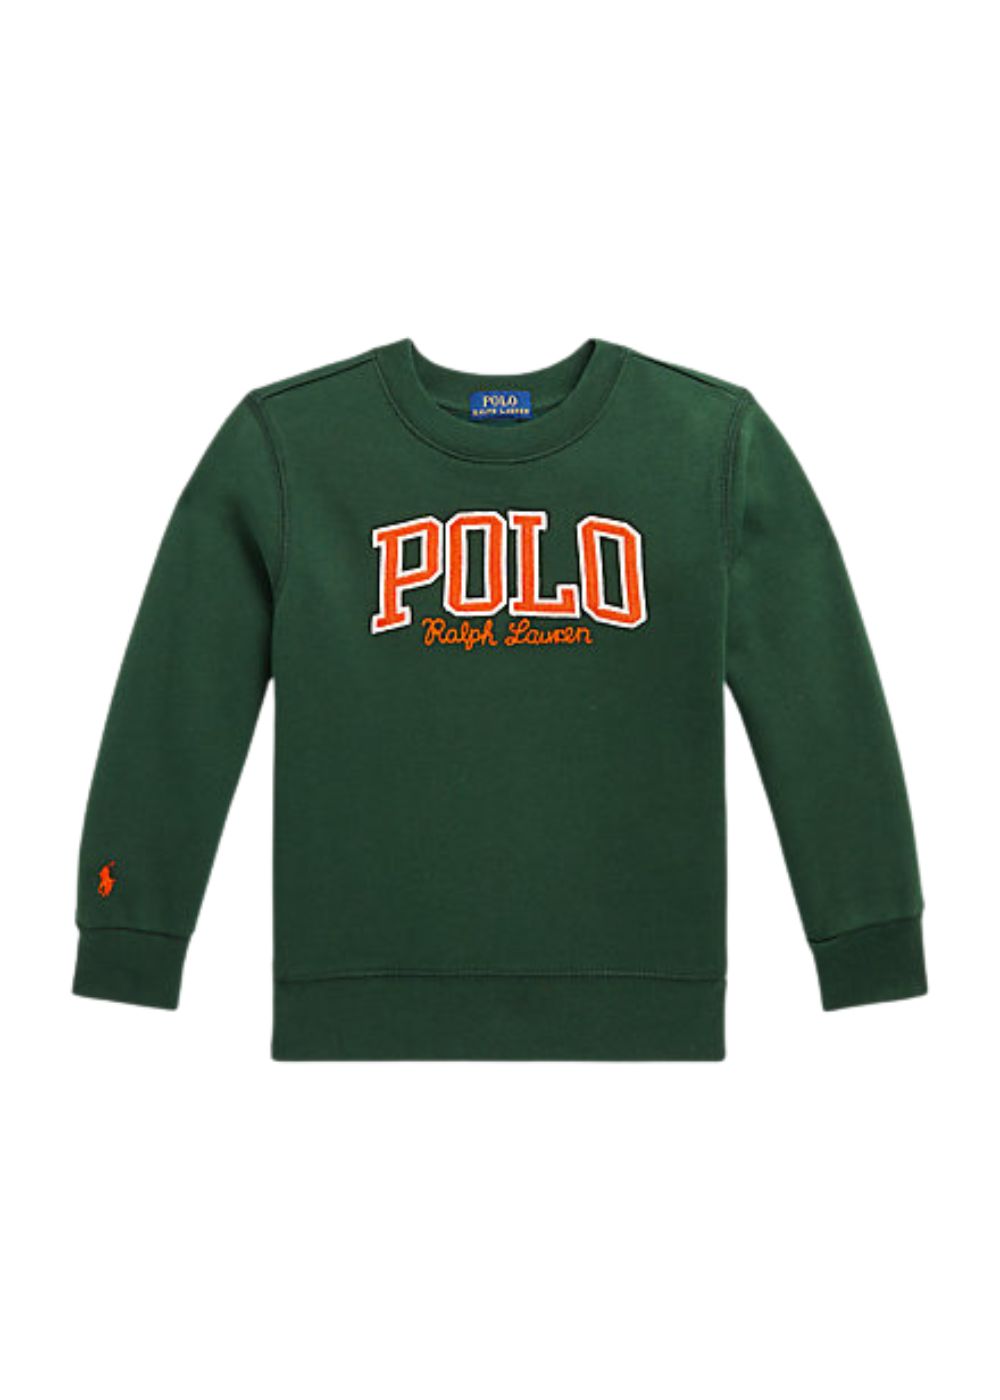 Featured image for “Polo Ralph Lauren Felpa Con logo”